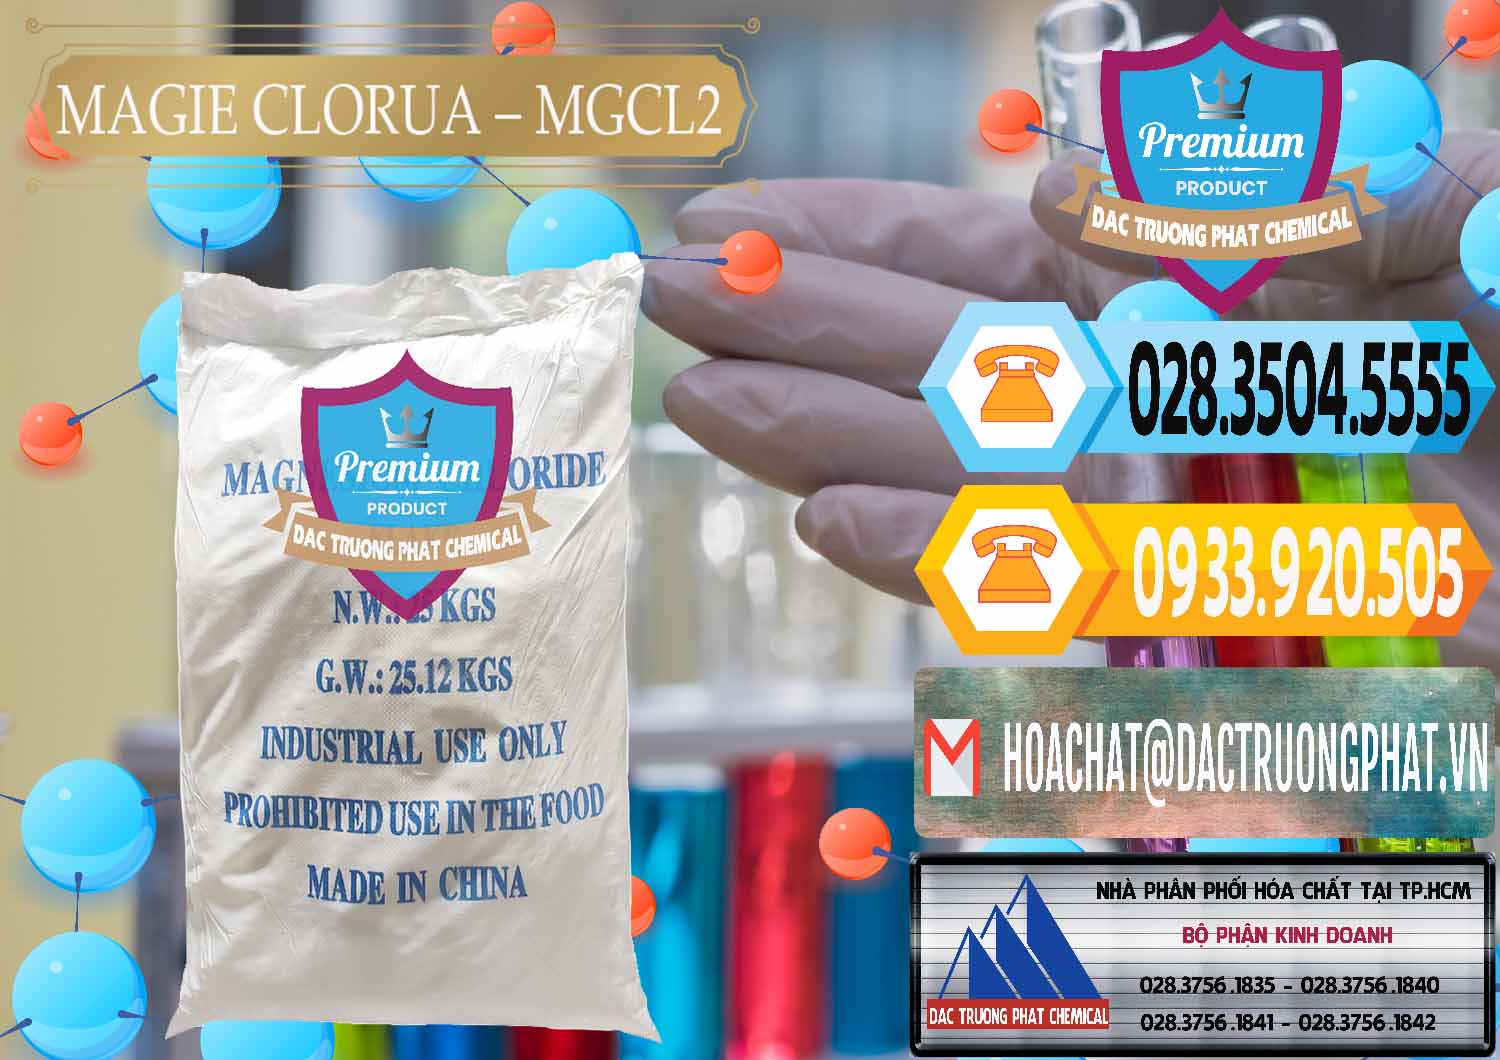 Công ty chuyên bán ( cung cấp ) Magie Clorua – MGCL2 96% Dạng Vảy Trung Quốc China - 0091 - Nơi chuyên nhập khẩu - phân phối hóa chất tại TP.HCM - hoachattayrua.net